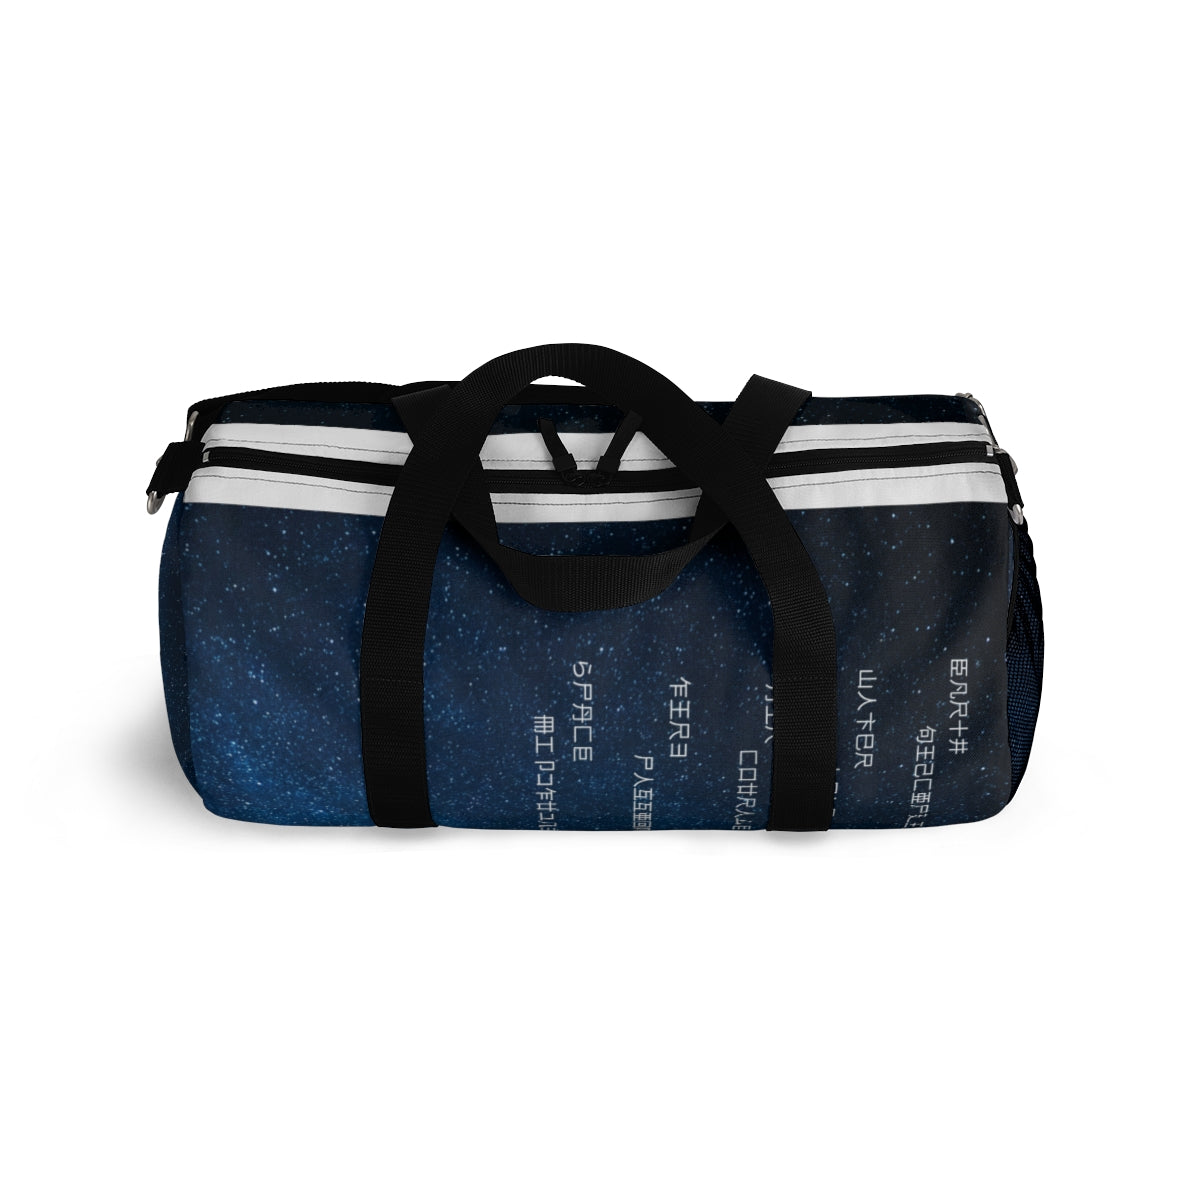 The Element5 Galaxy blue Duffel Bag